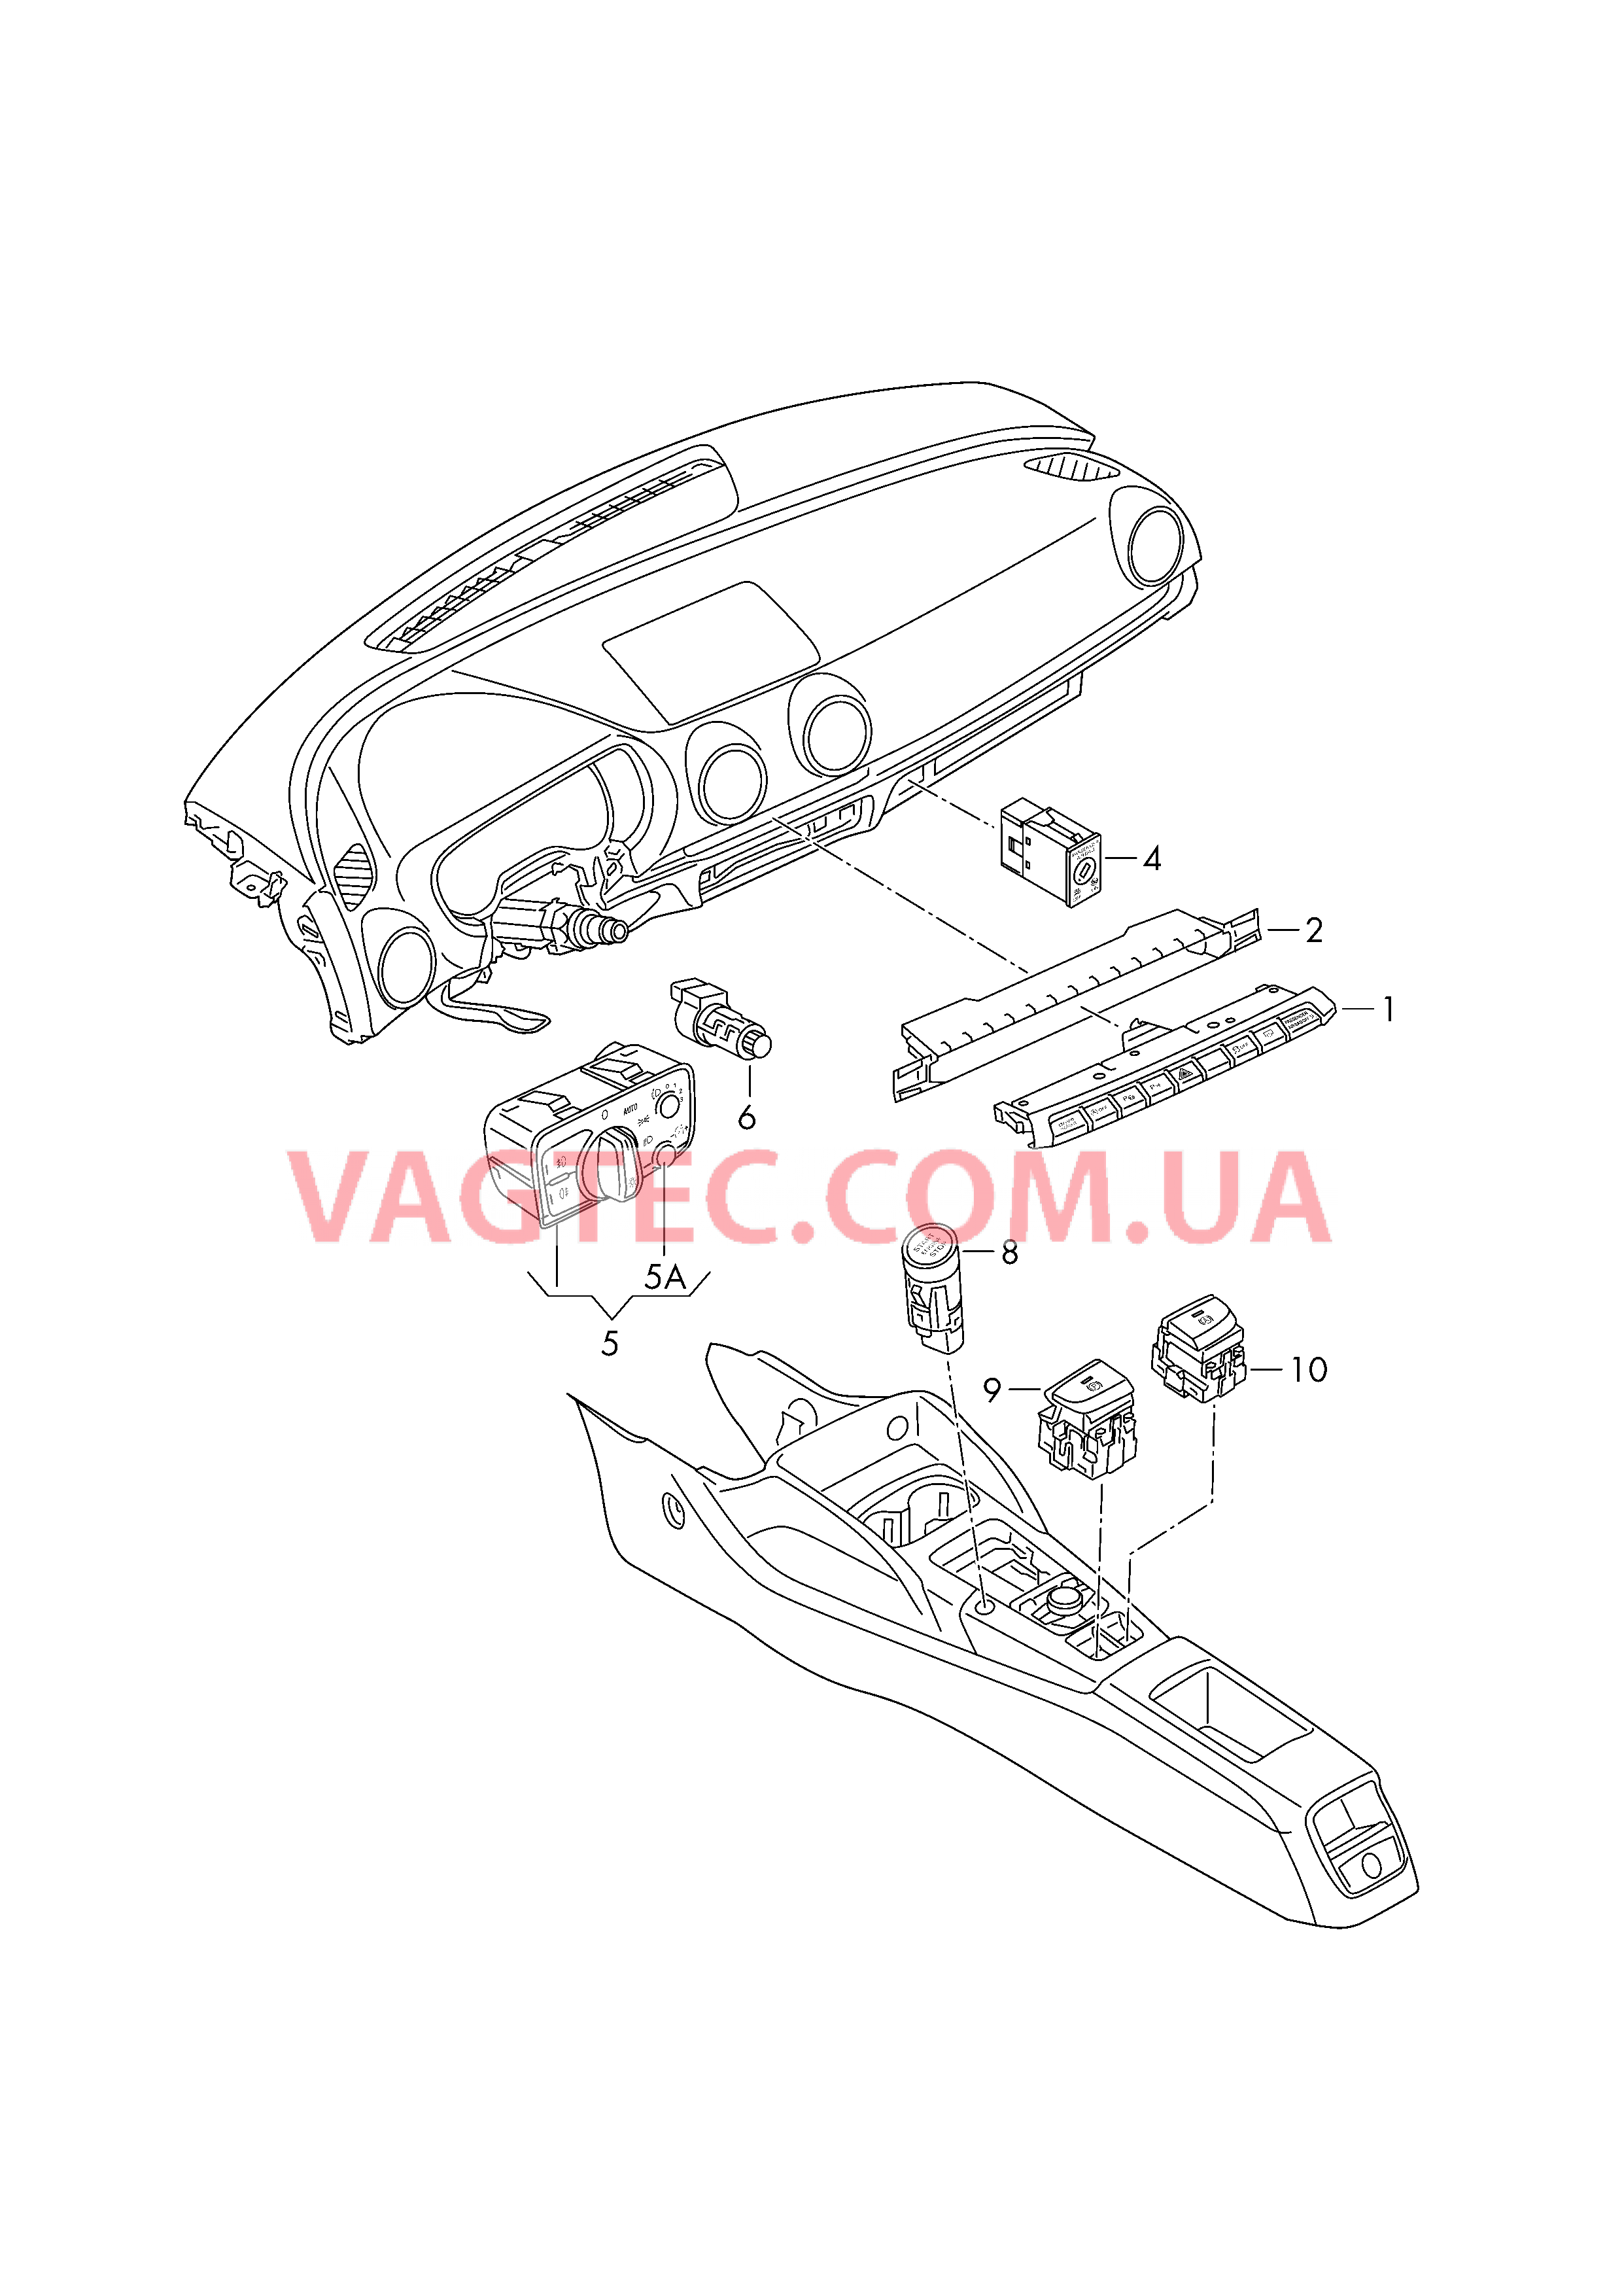 Выключатель в панели приборов Выключатель фар Выключатель в централ. консоли D - 26.05.2014>> для AUDI A3 2015